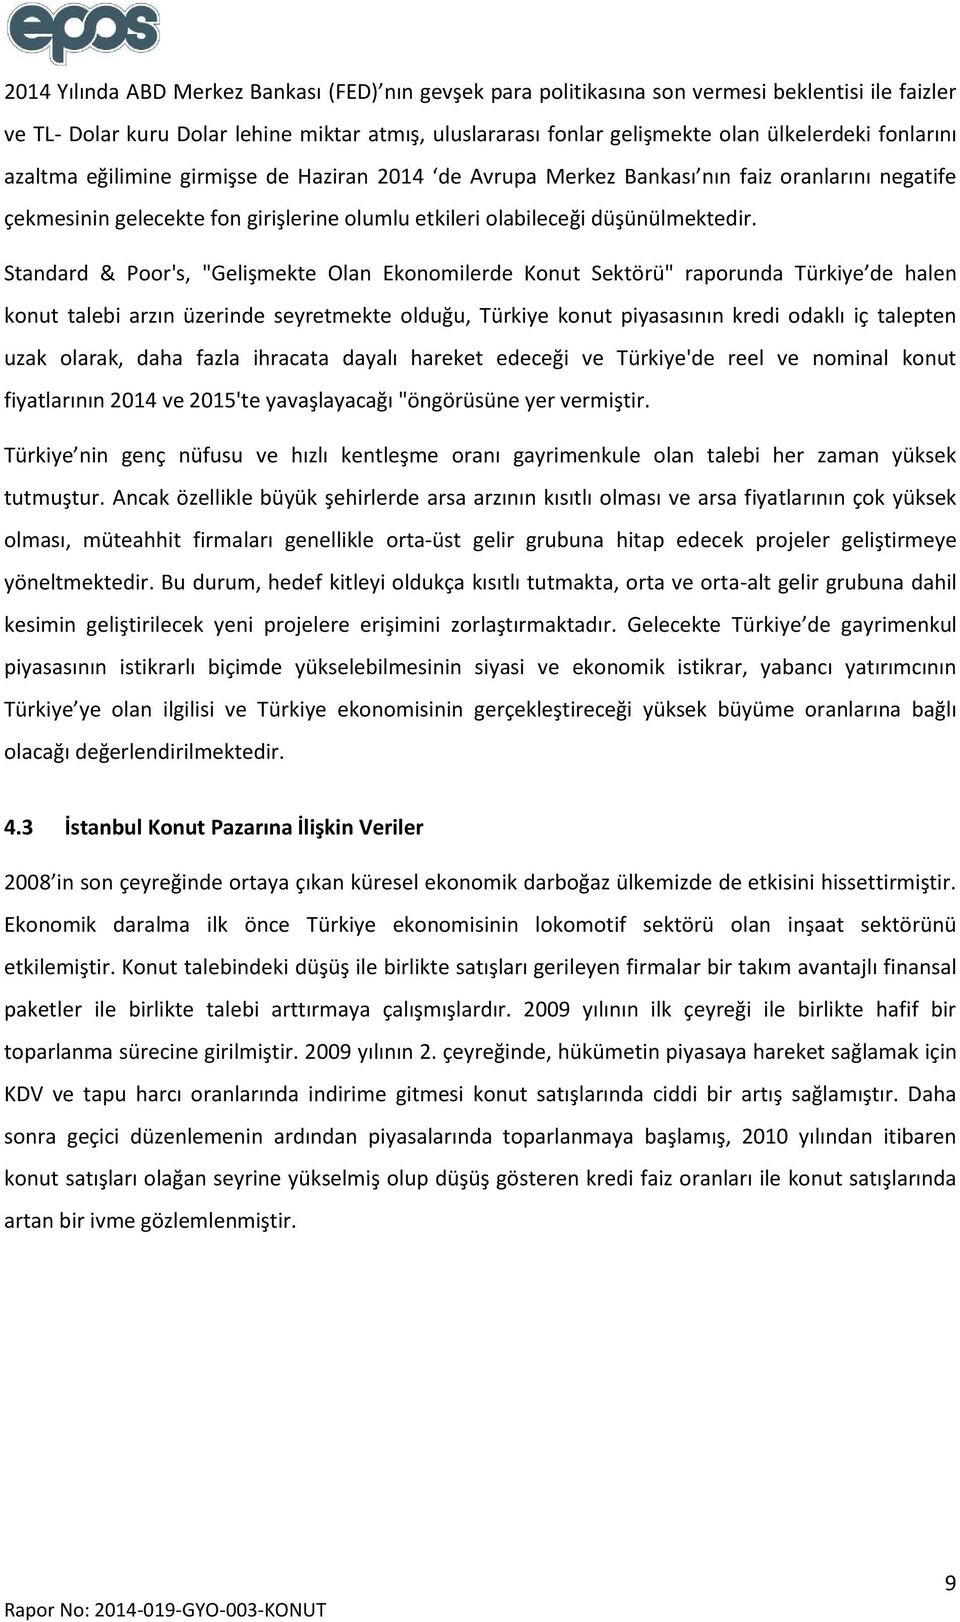 Standard & Poor's, "Gelişmekte Olan Ekonomilerde Konut Sektörü" raporunda Türkiye de halen konut talebi arzın üzerinde seyretmekte olduğu, Türkiye konut piyasasının kredi odaklı iç talepten uzak